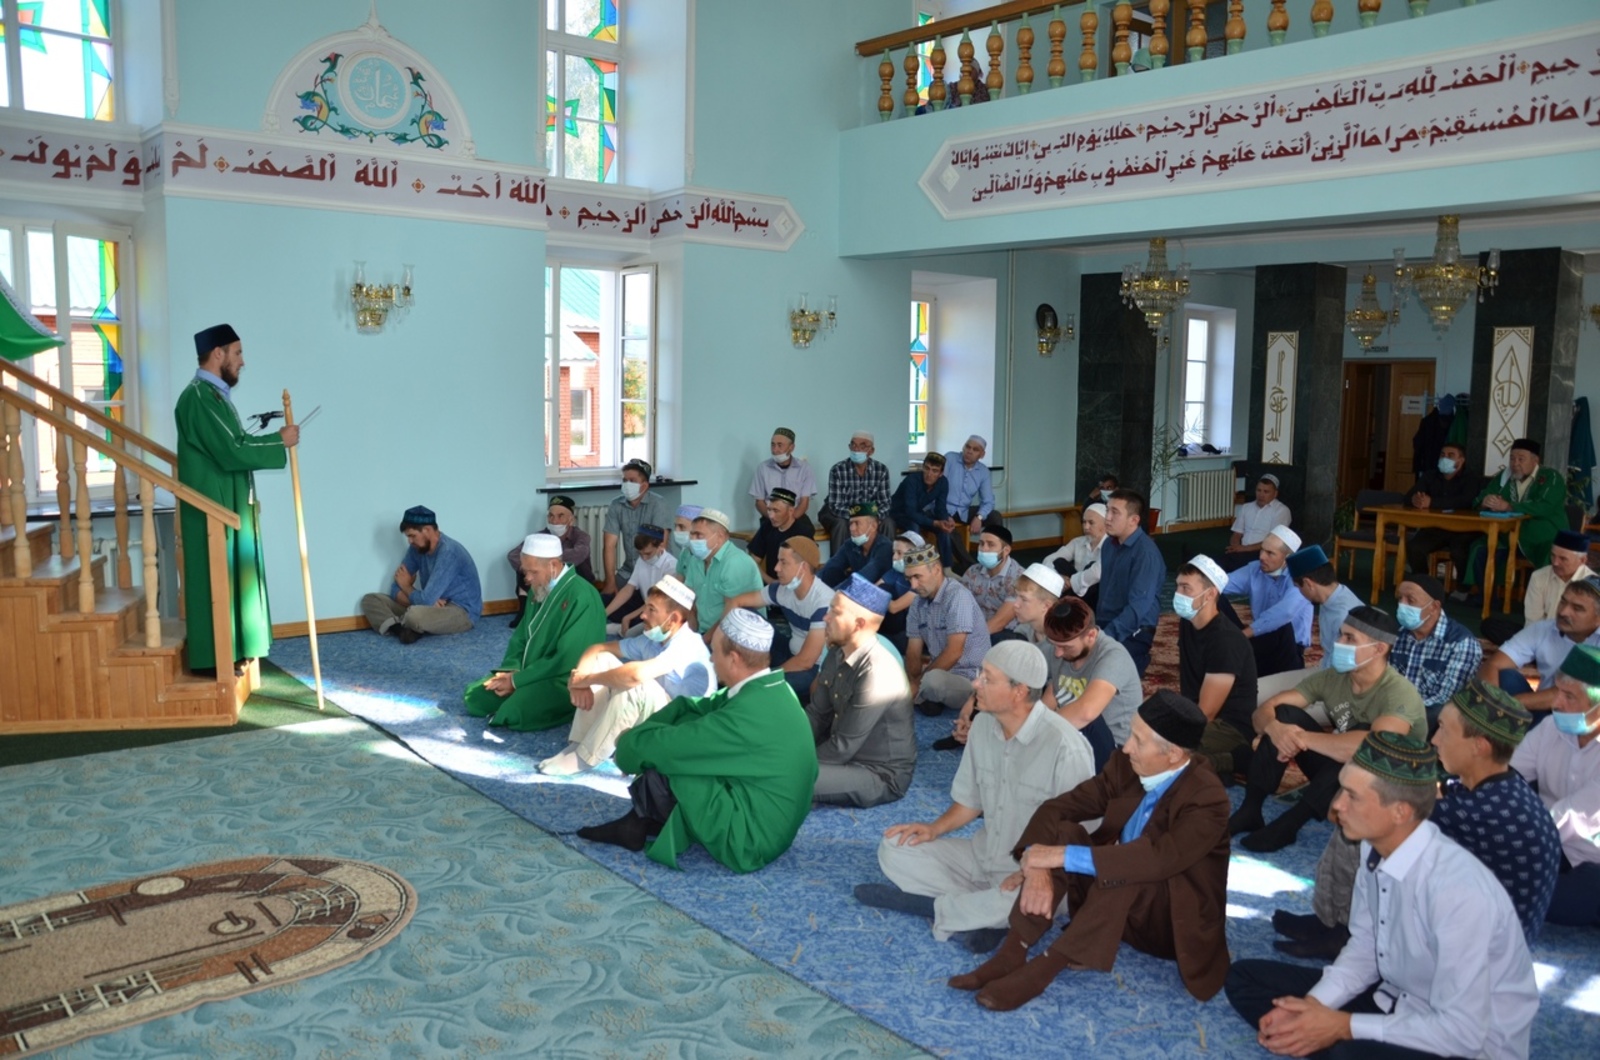 Праздничная молитва в центральной мечети района на Курбан-байрам началась 20 июля в 08.00 утра.